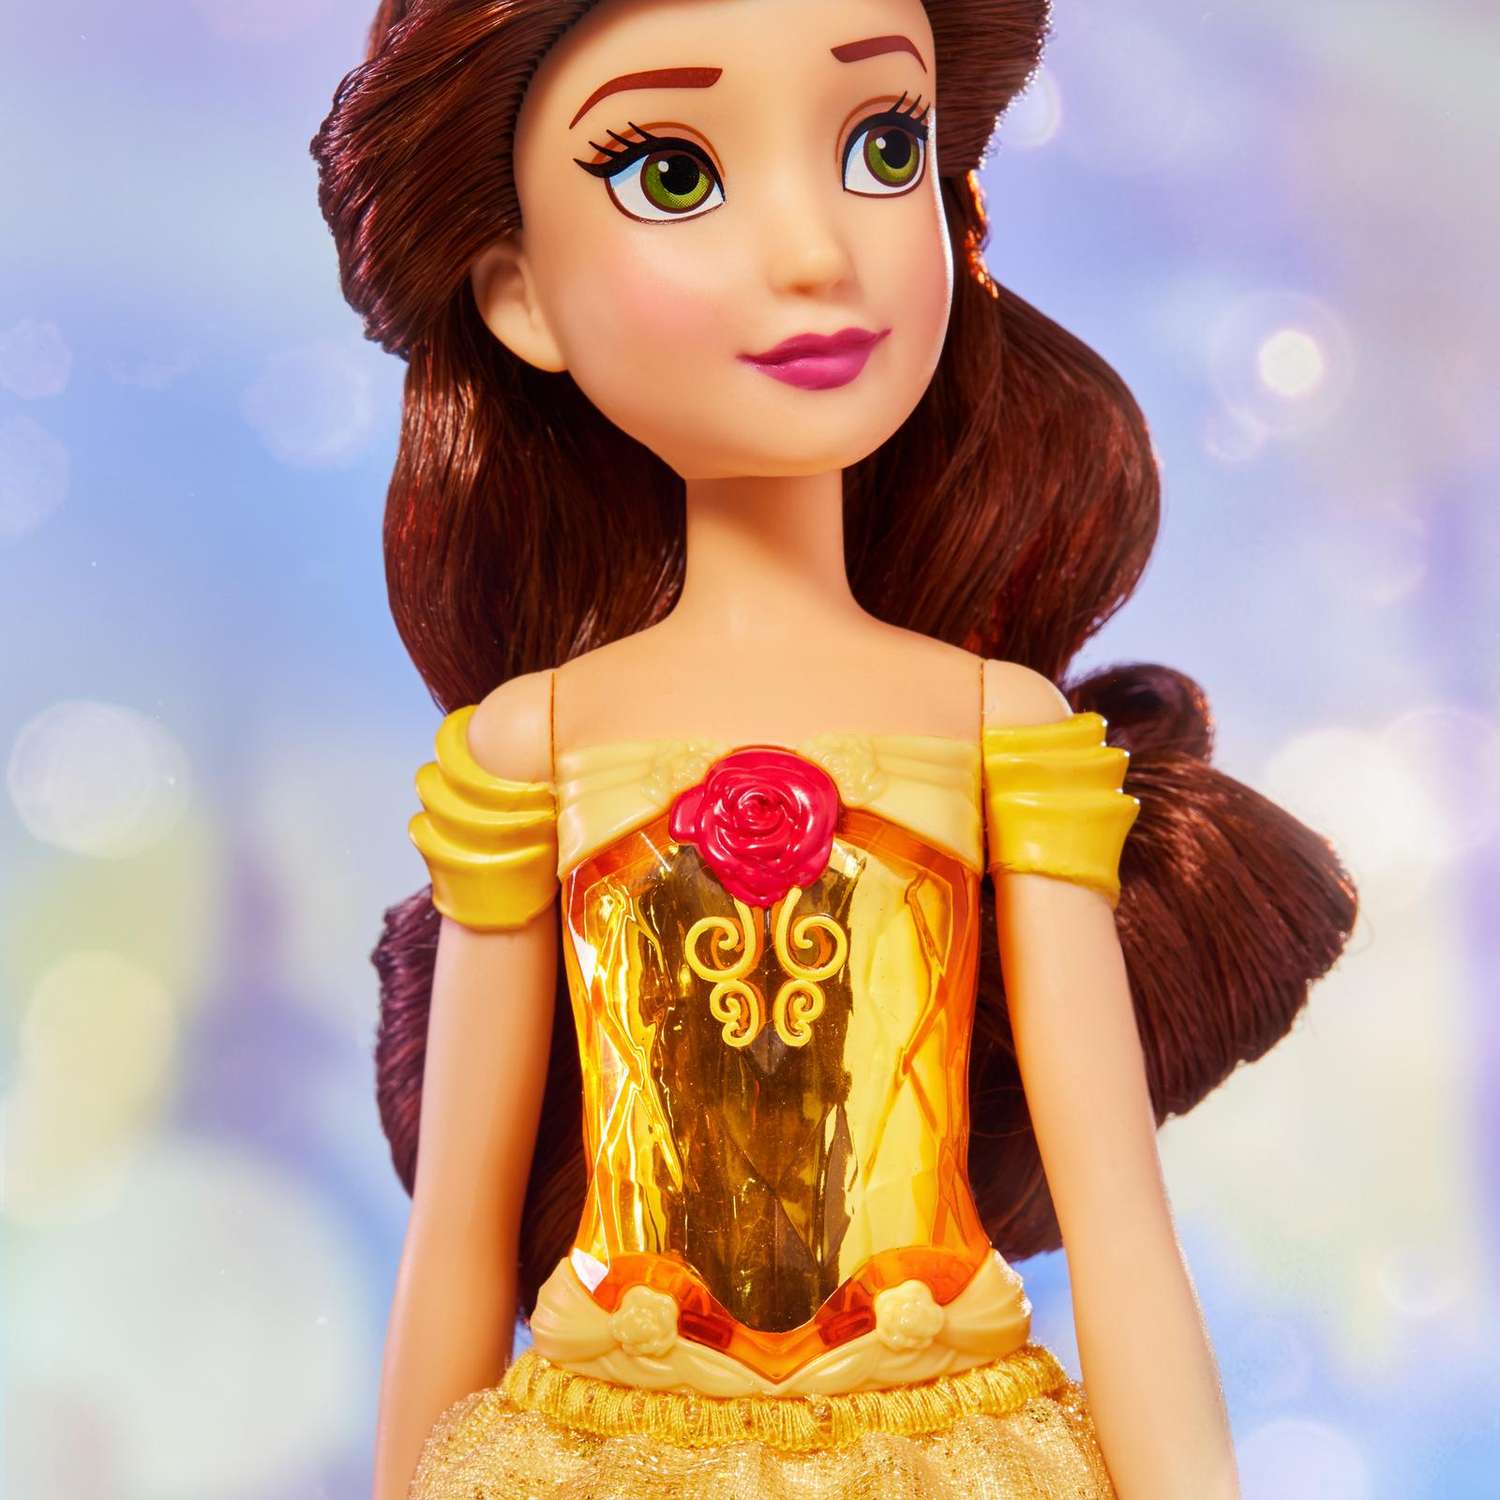 Кукла Disney Disney Princess Белль F08985X6 F08985X6 - фото 11